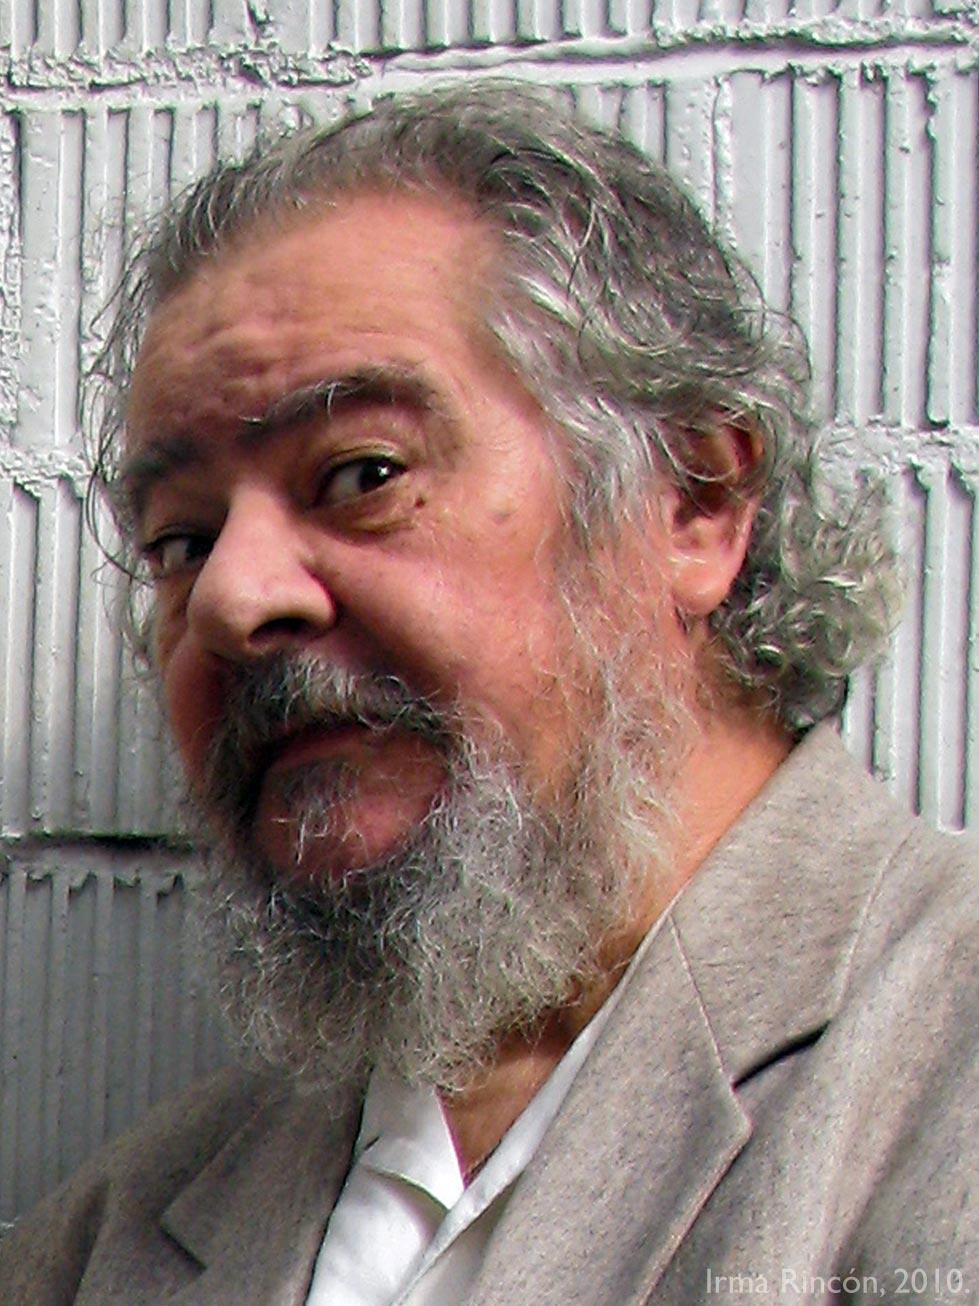 AntonioGonzalez